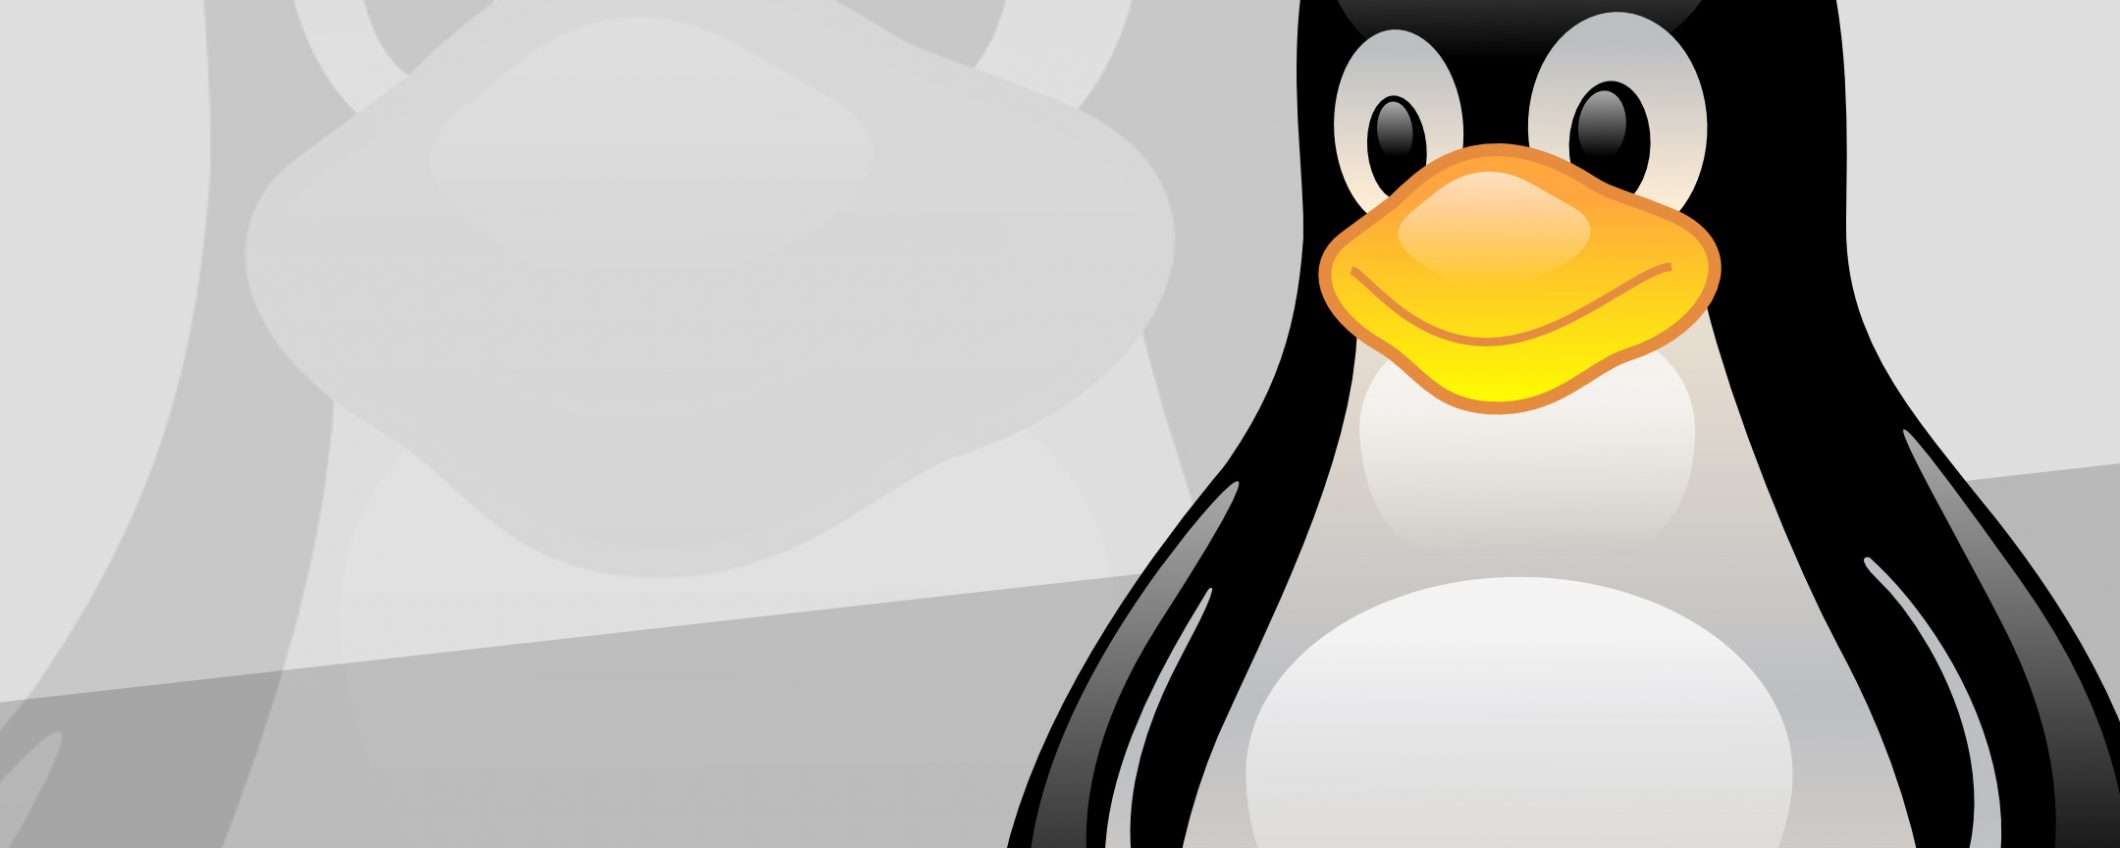 Linux: dal 2009 un bug fa acquisire privilegi root